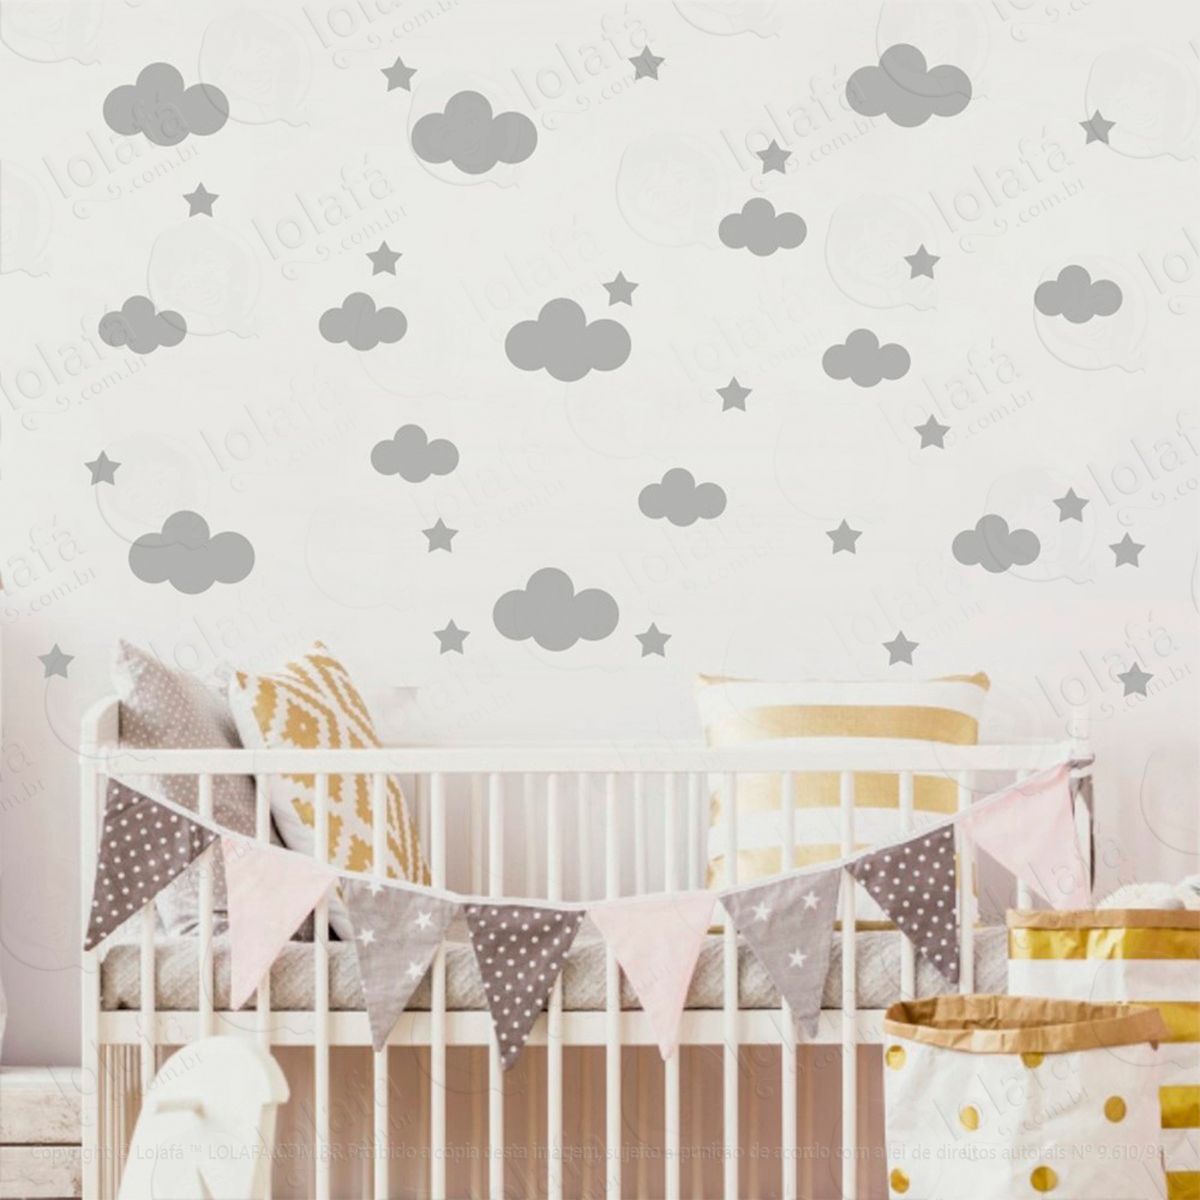 adesivos nuvens e estrelas 104 peças adesivos para quarto de bebê infantil - mod:978